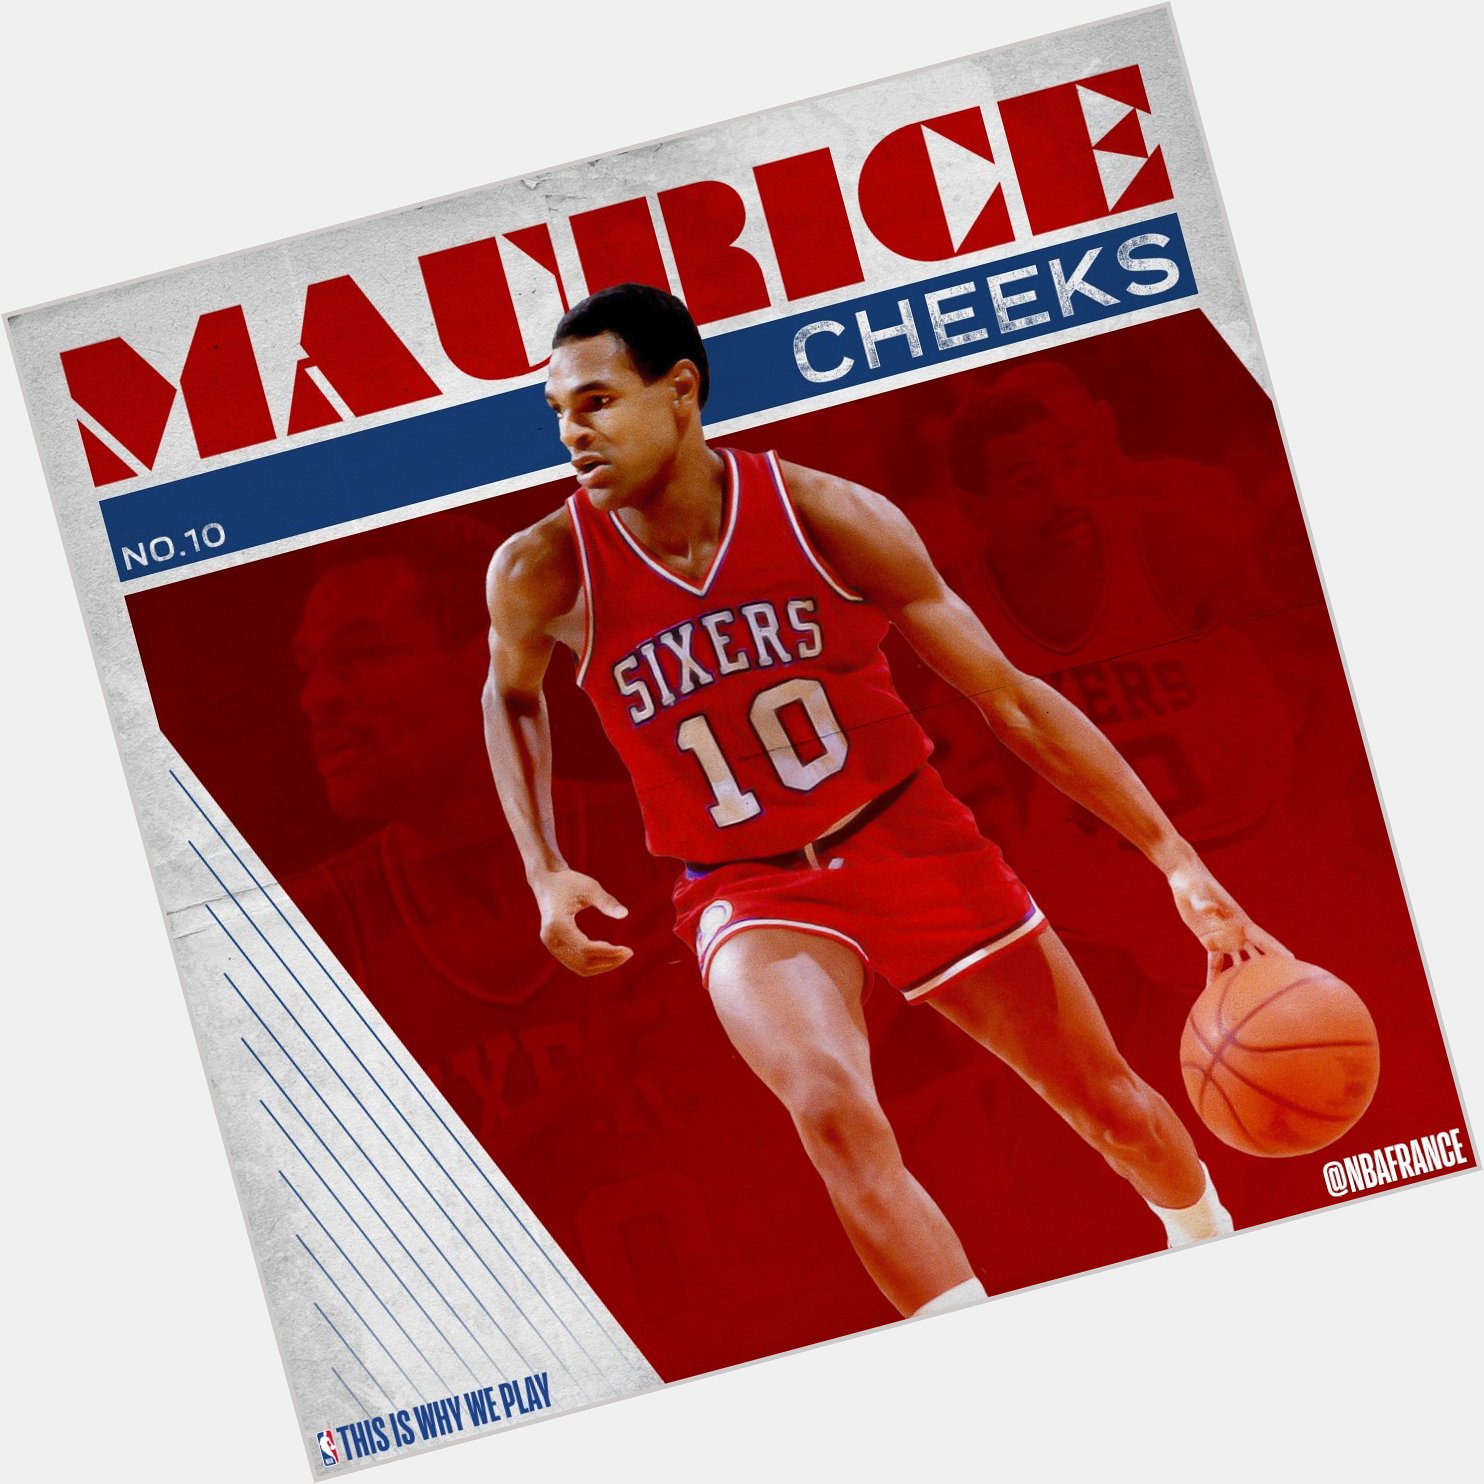 Happy birthday Maurice Cheeks! 